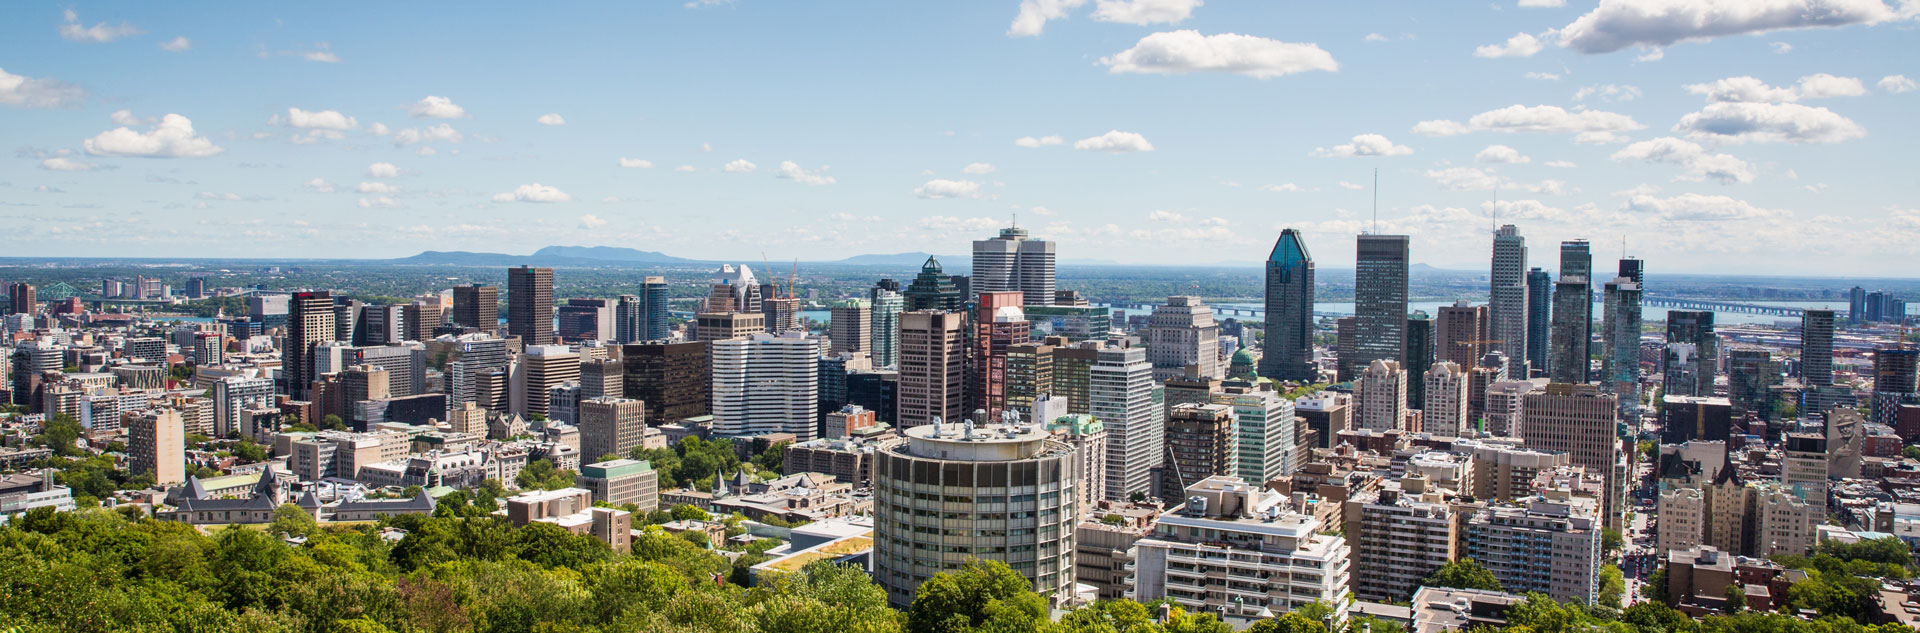 Blick auf Montreal, Quebec, Canada